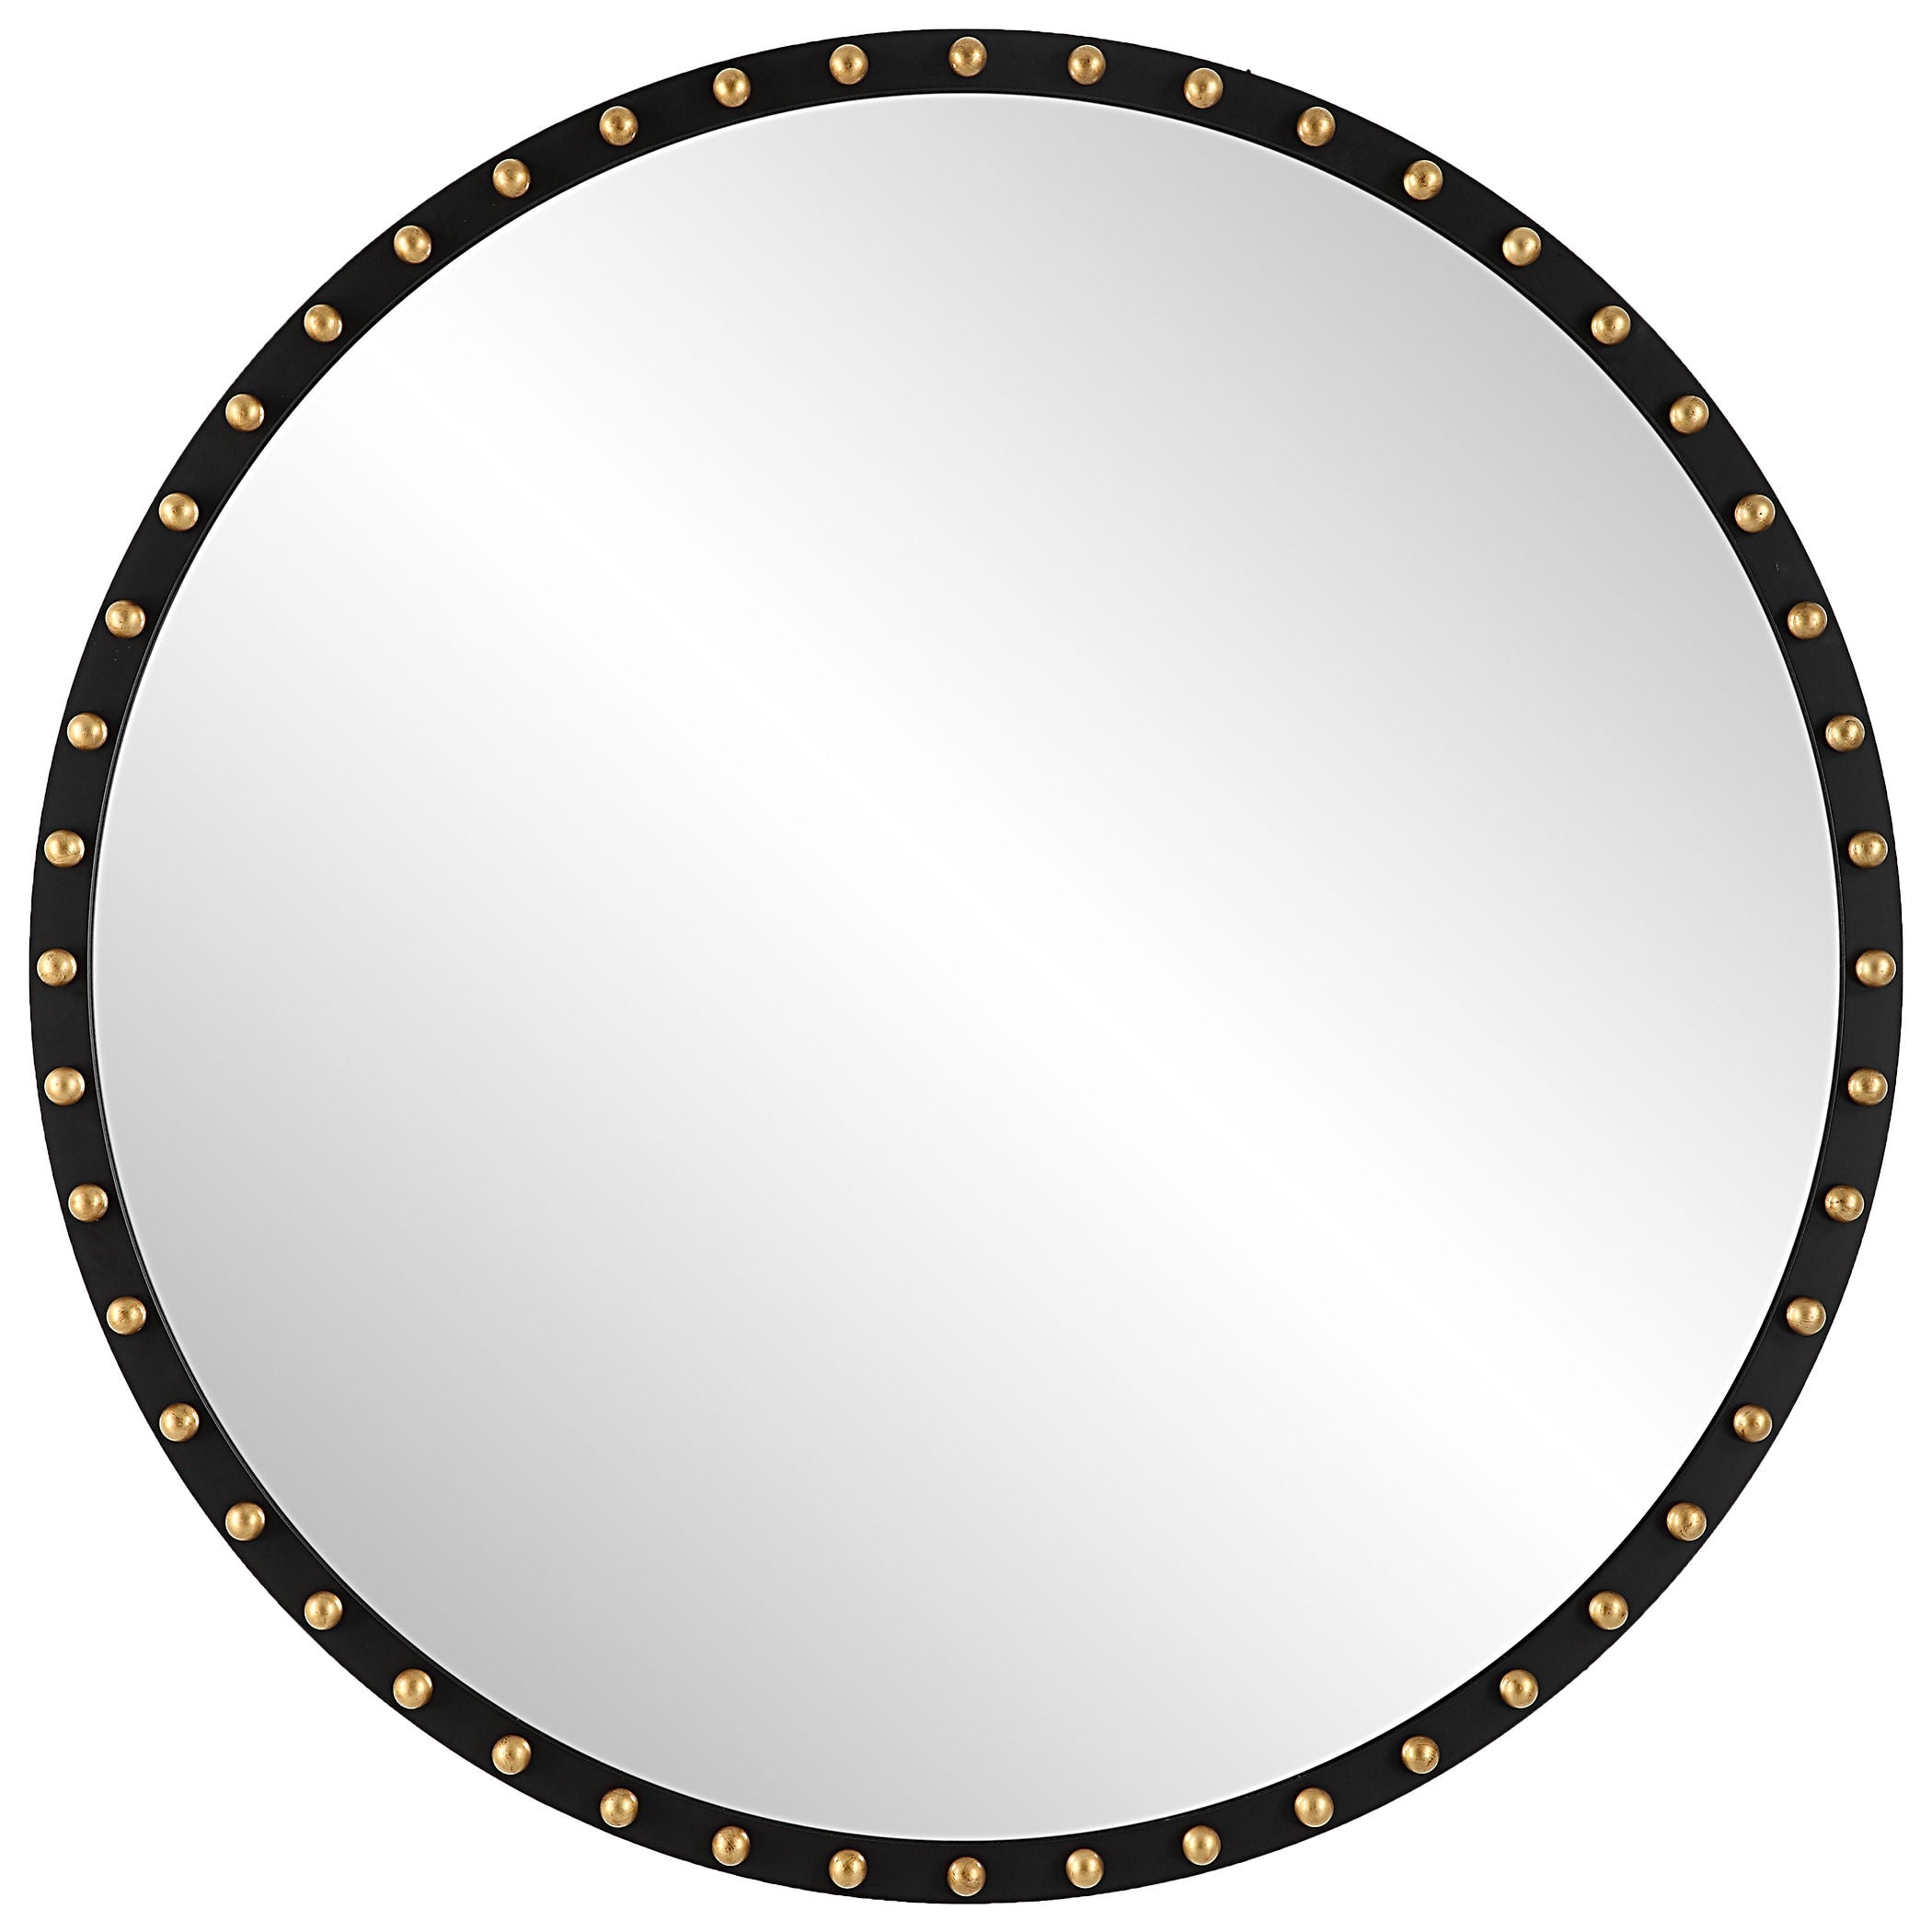 Sele - Oversized Round Mirror